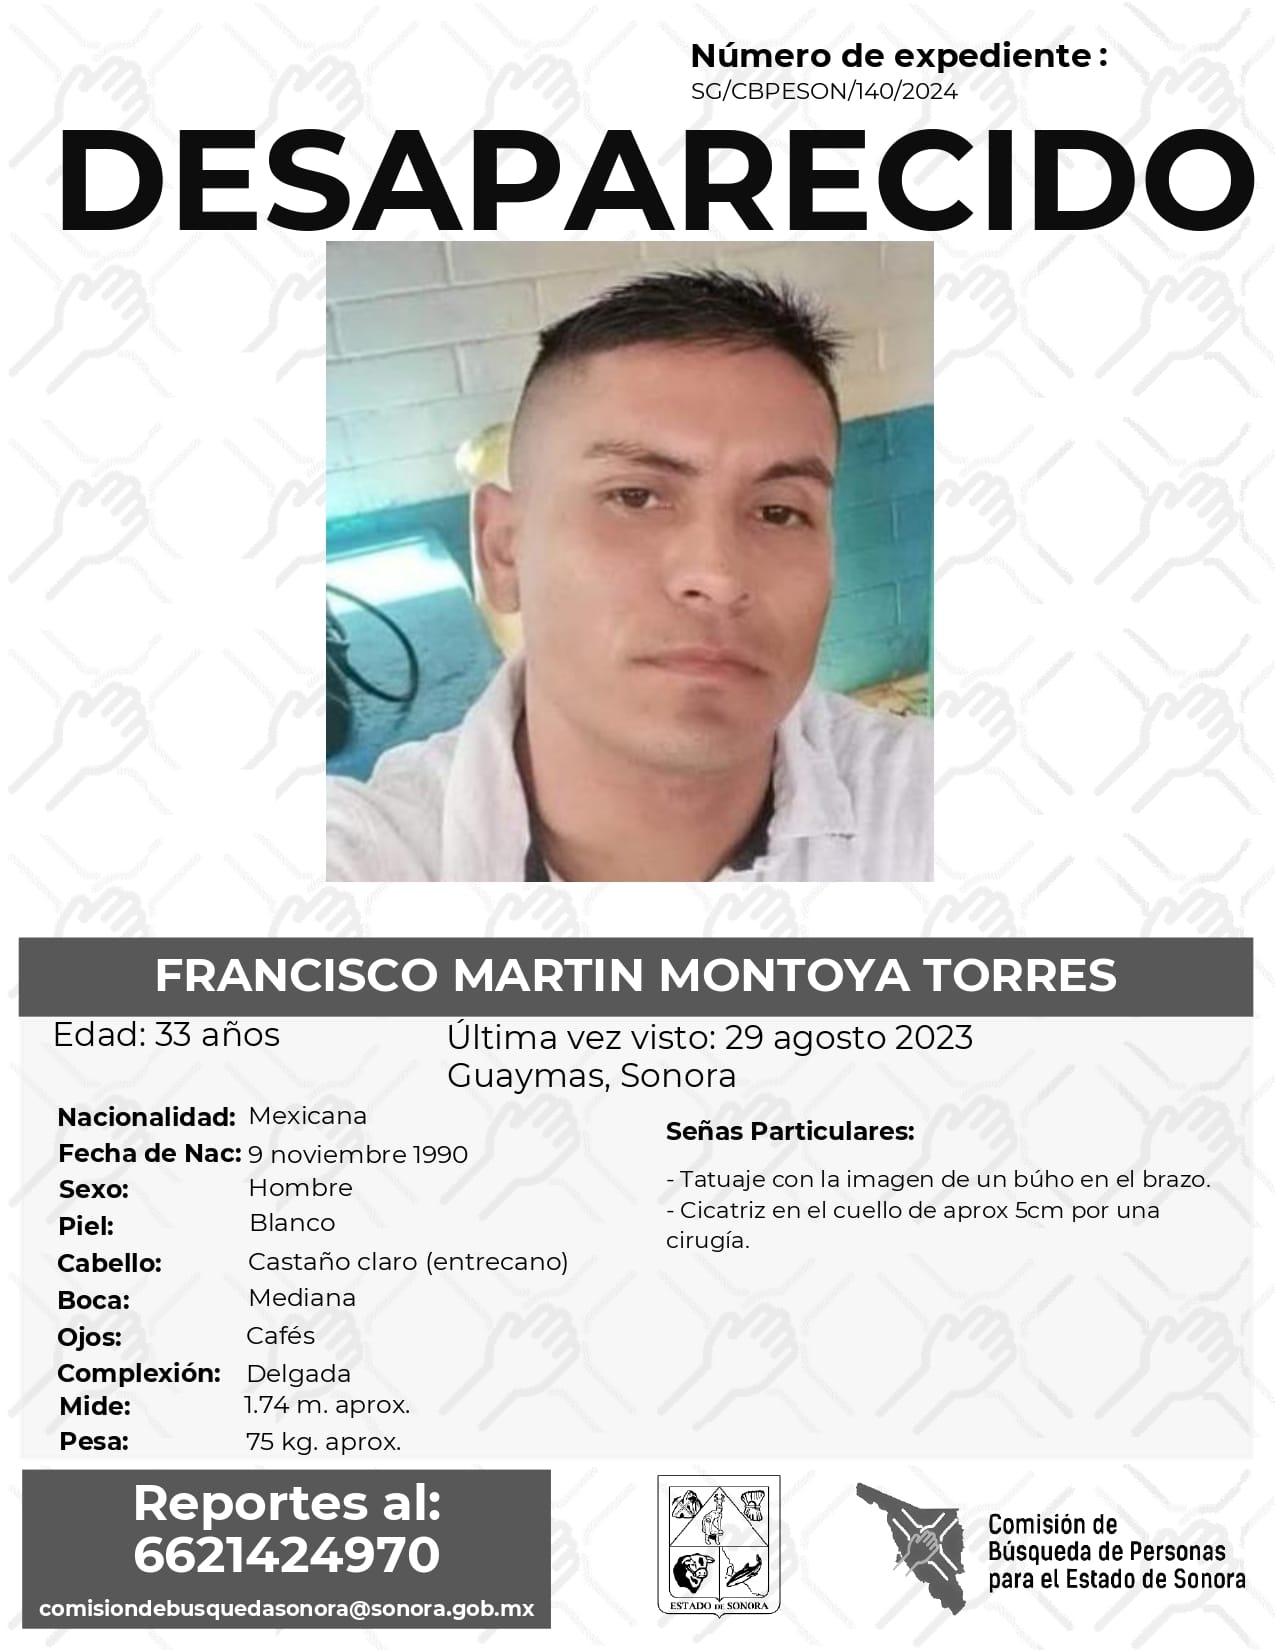 FRANCISCO MARTÍN MONTOYA TORRES - DESAPARECIDO